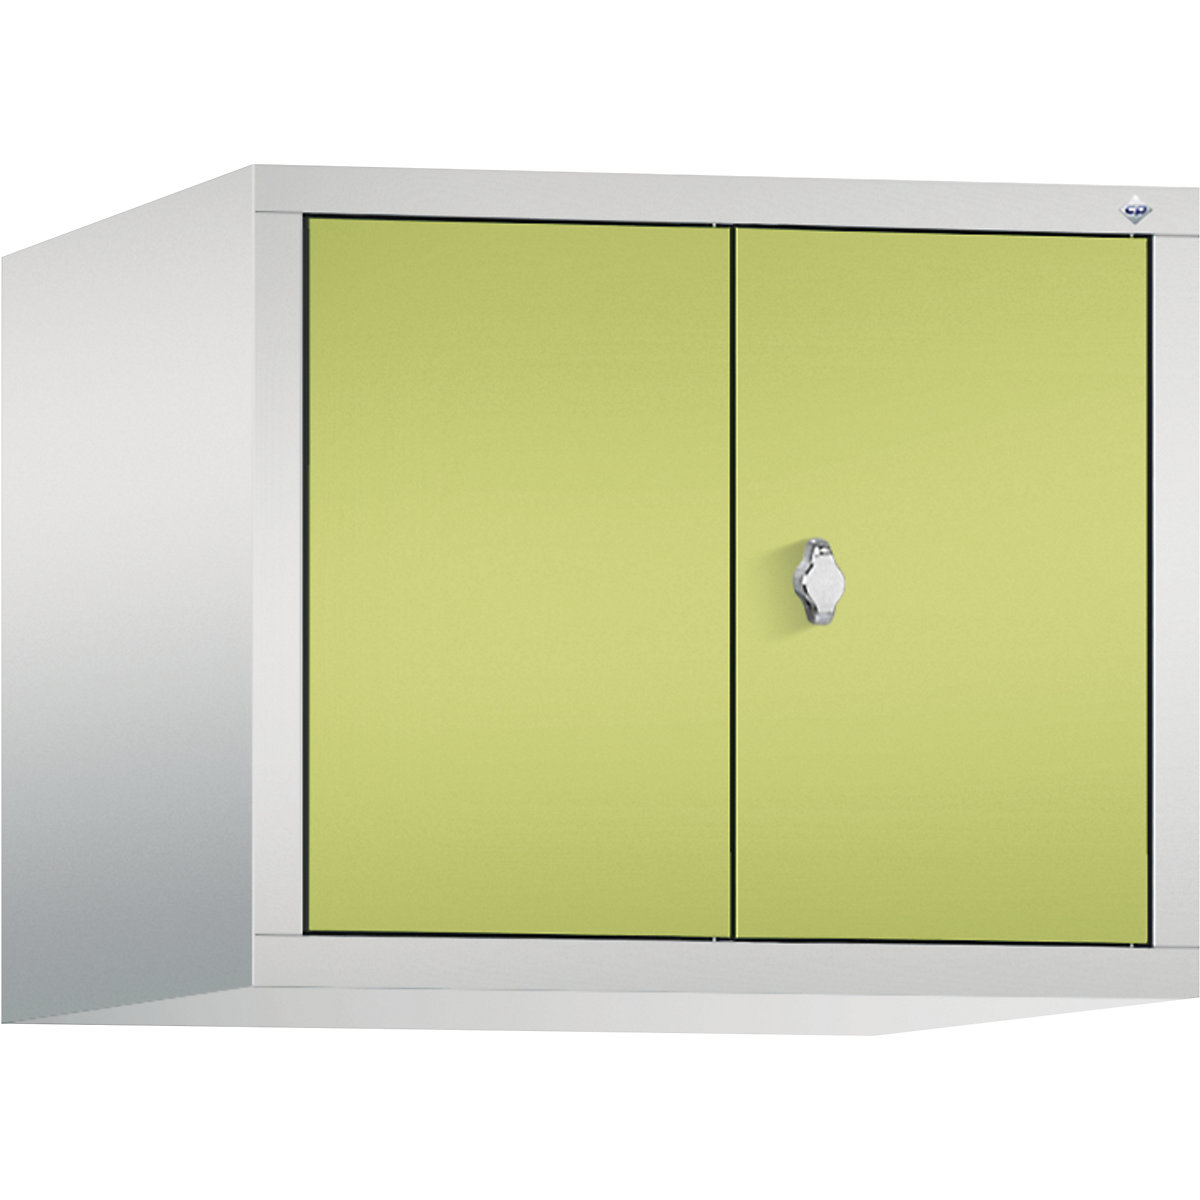 C+P – Altillo CLASSIC, puertas batientes que cierran al ras entre sí, 2 compartimentos, anchura de compartimento 300 mm, gris luminoso / verde pistacho